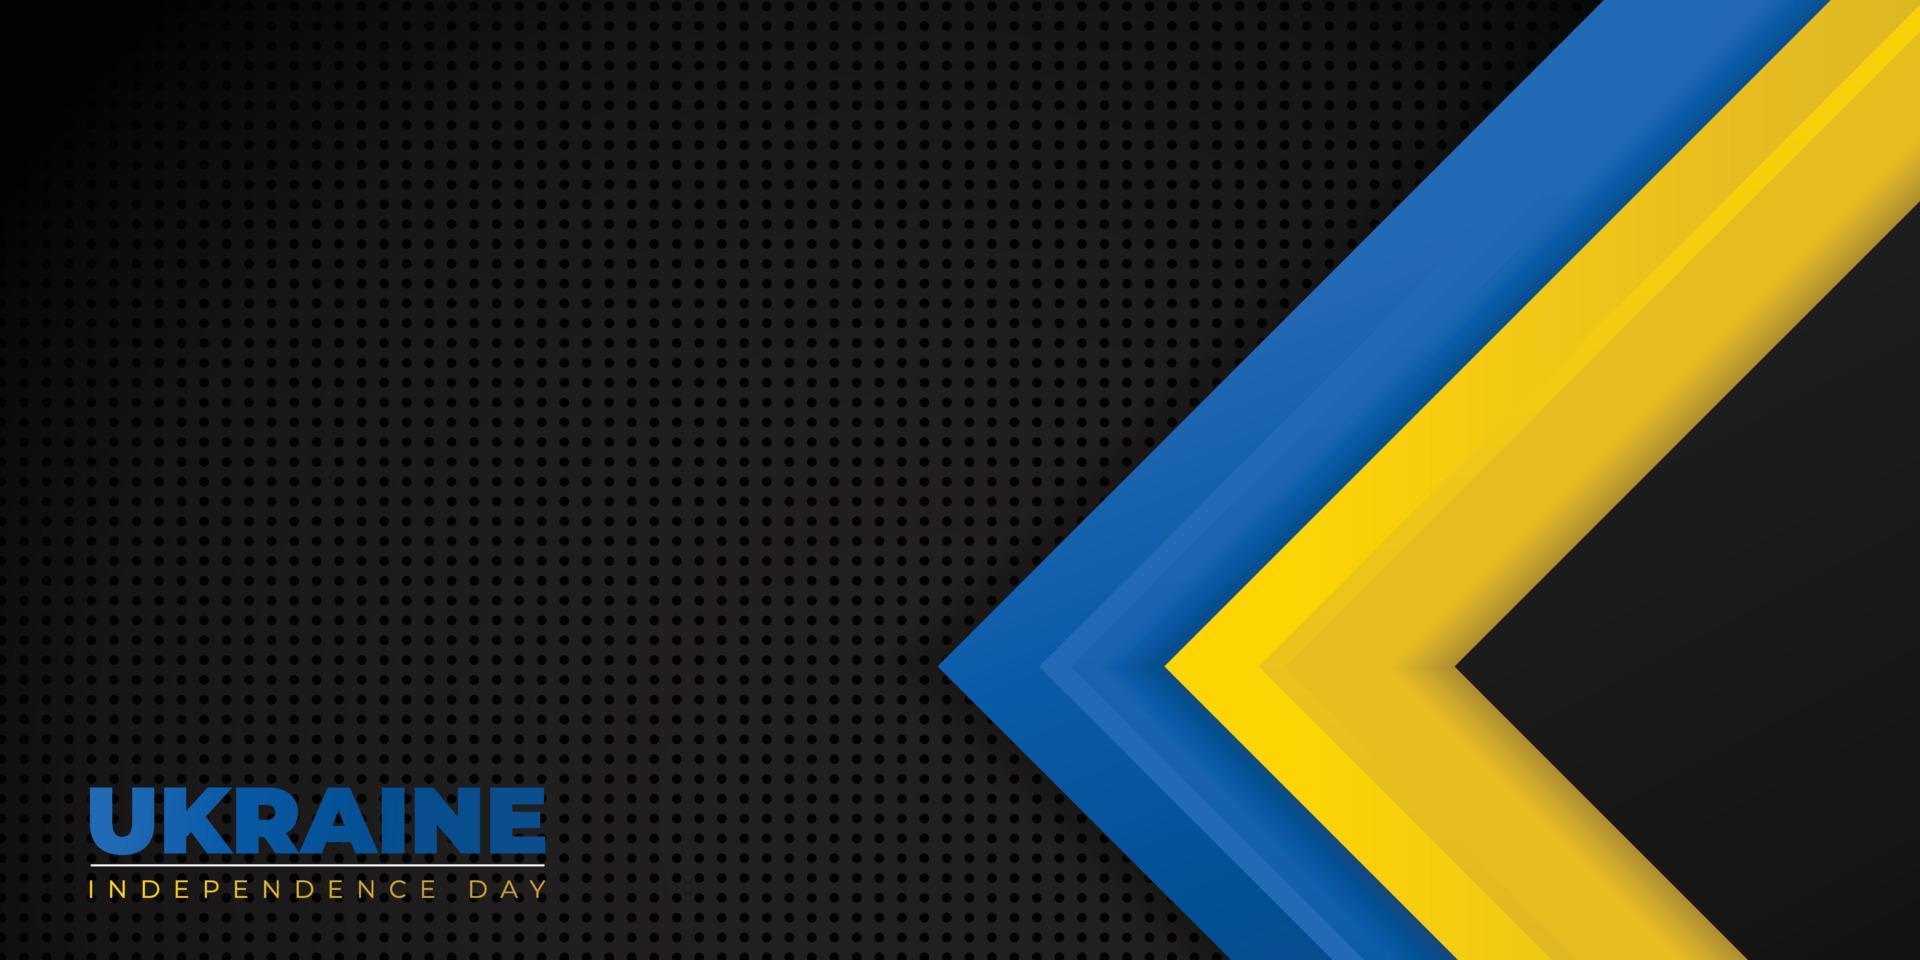 schwarzer, blauer und gelber geometrischer hintergrund für das design des ukrainischen unabhängigkeitstages vektor